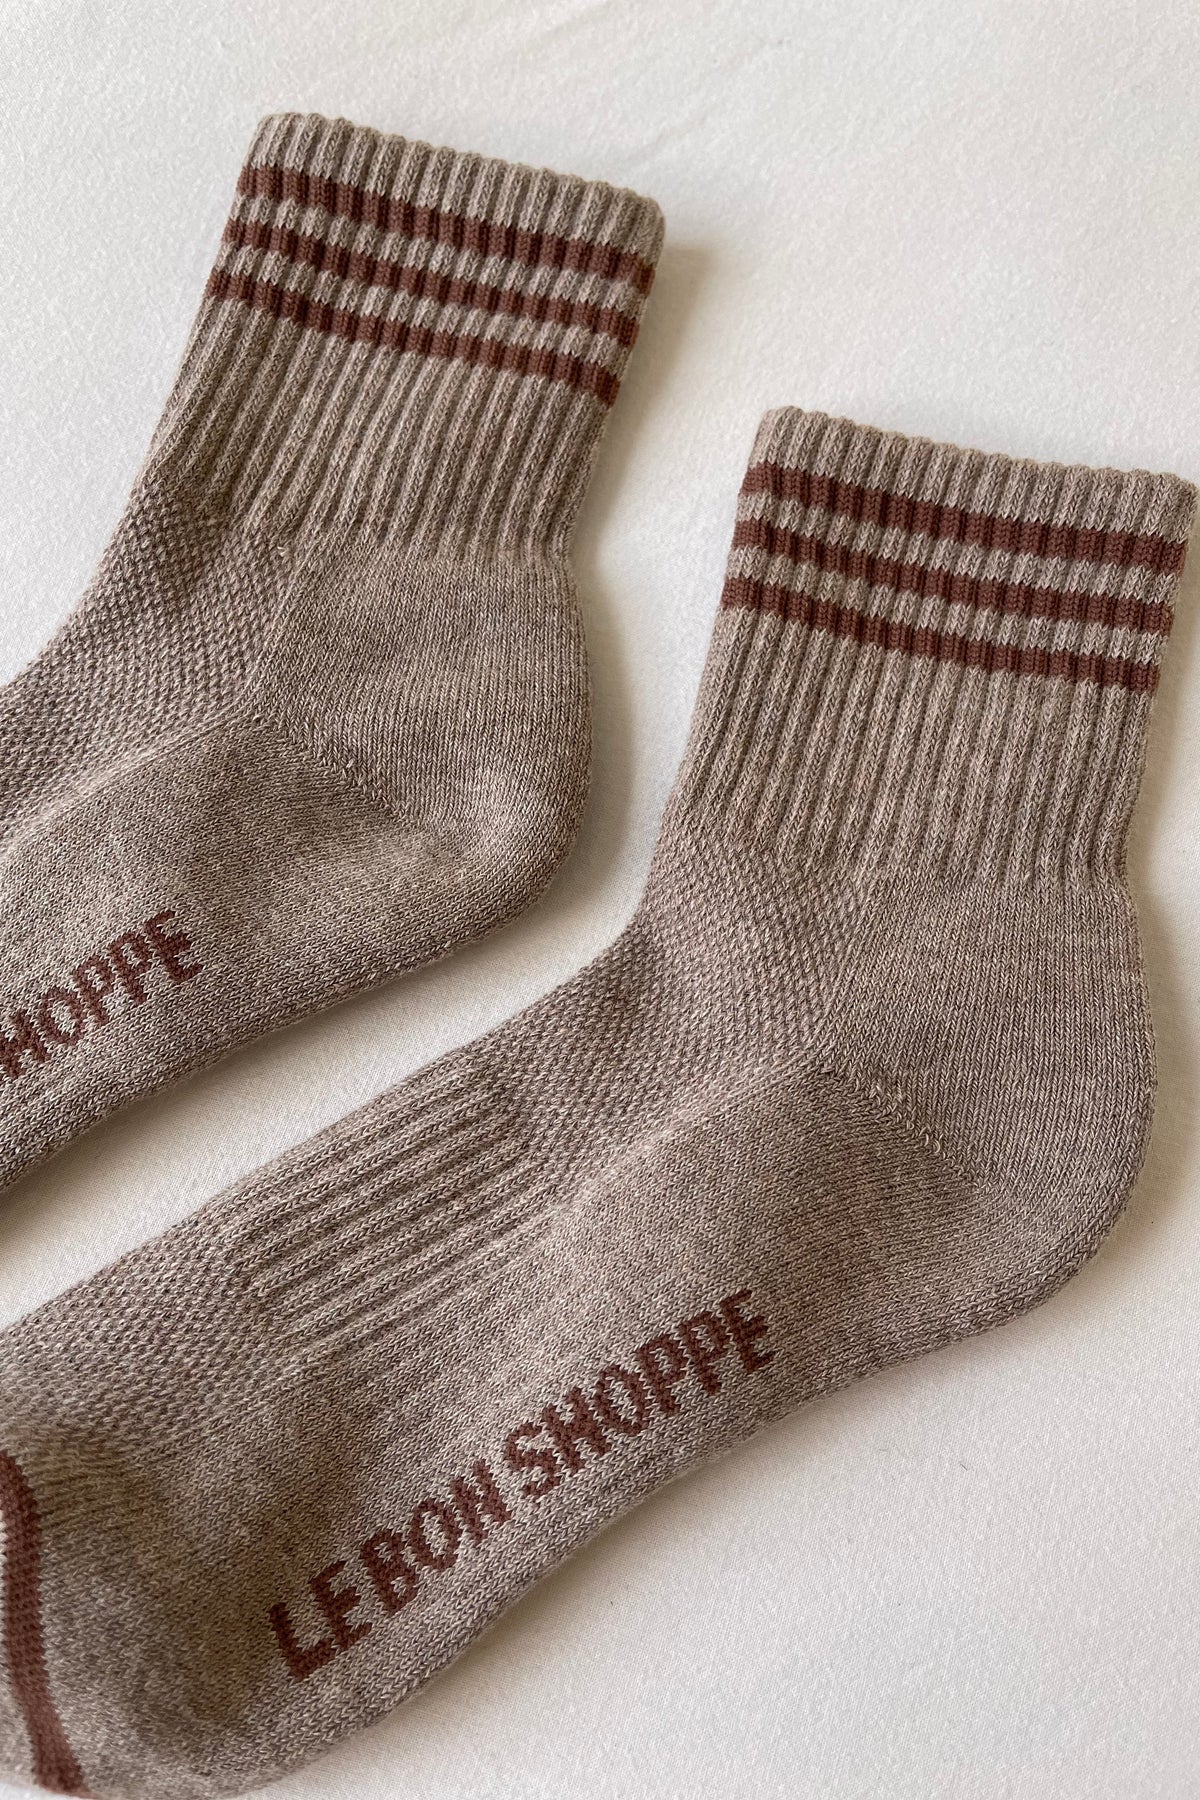 Girlfriend Socks in Hazelwood By Le Bon Shoppe